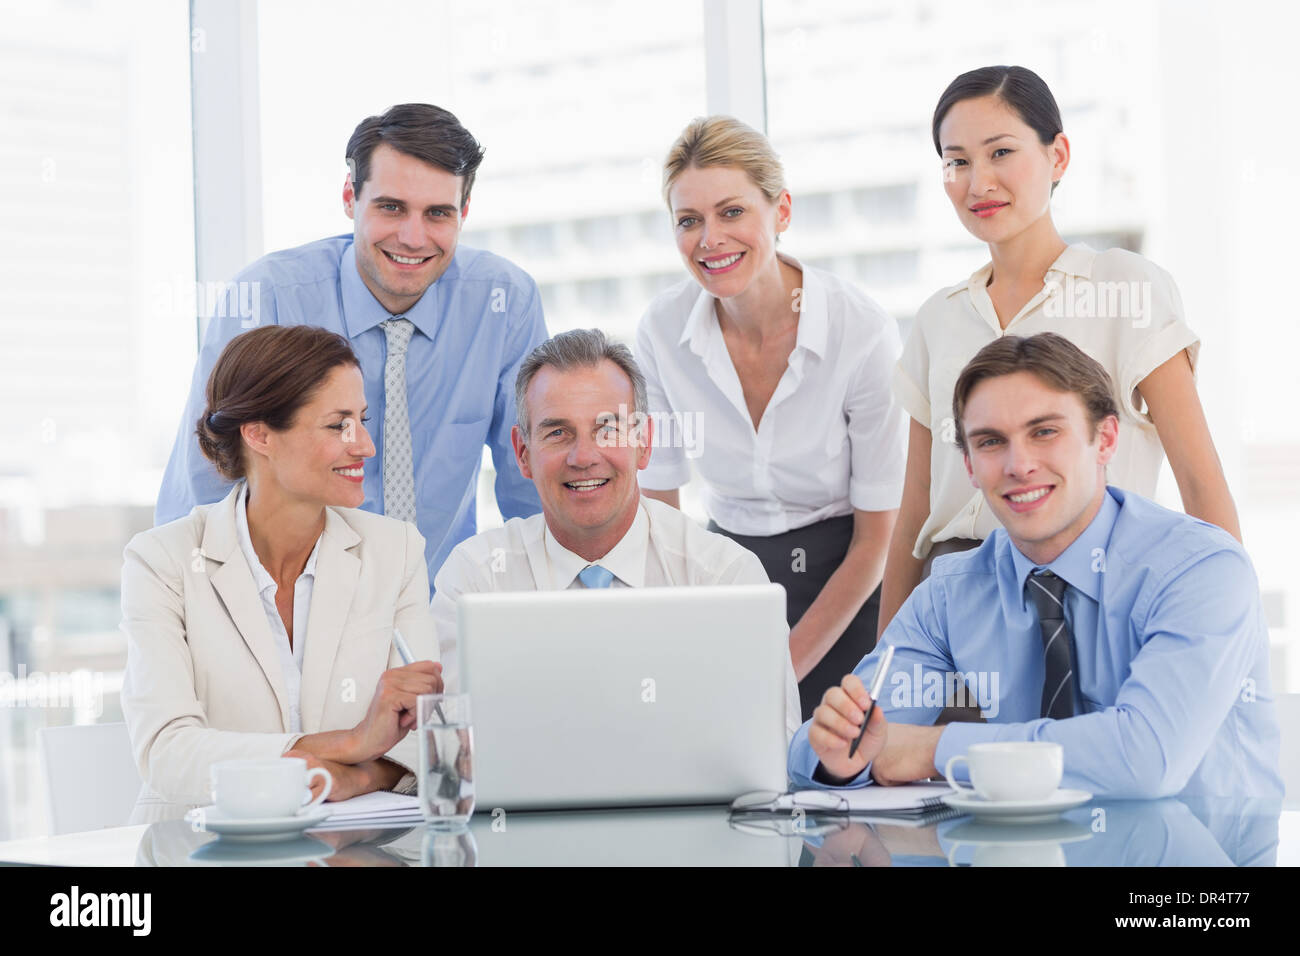 Geschäftskollegen mit Laptop am Schreibtisch Stockfoto ...